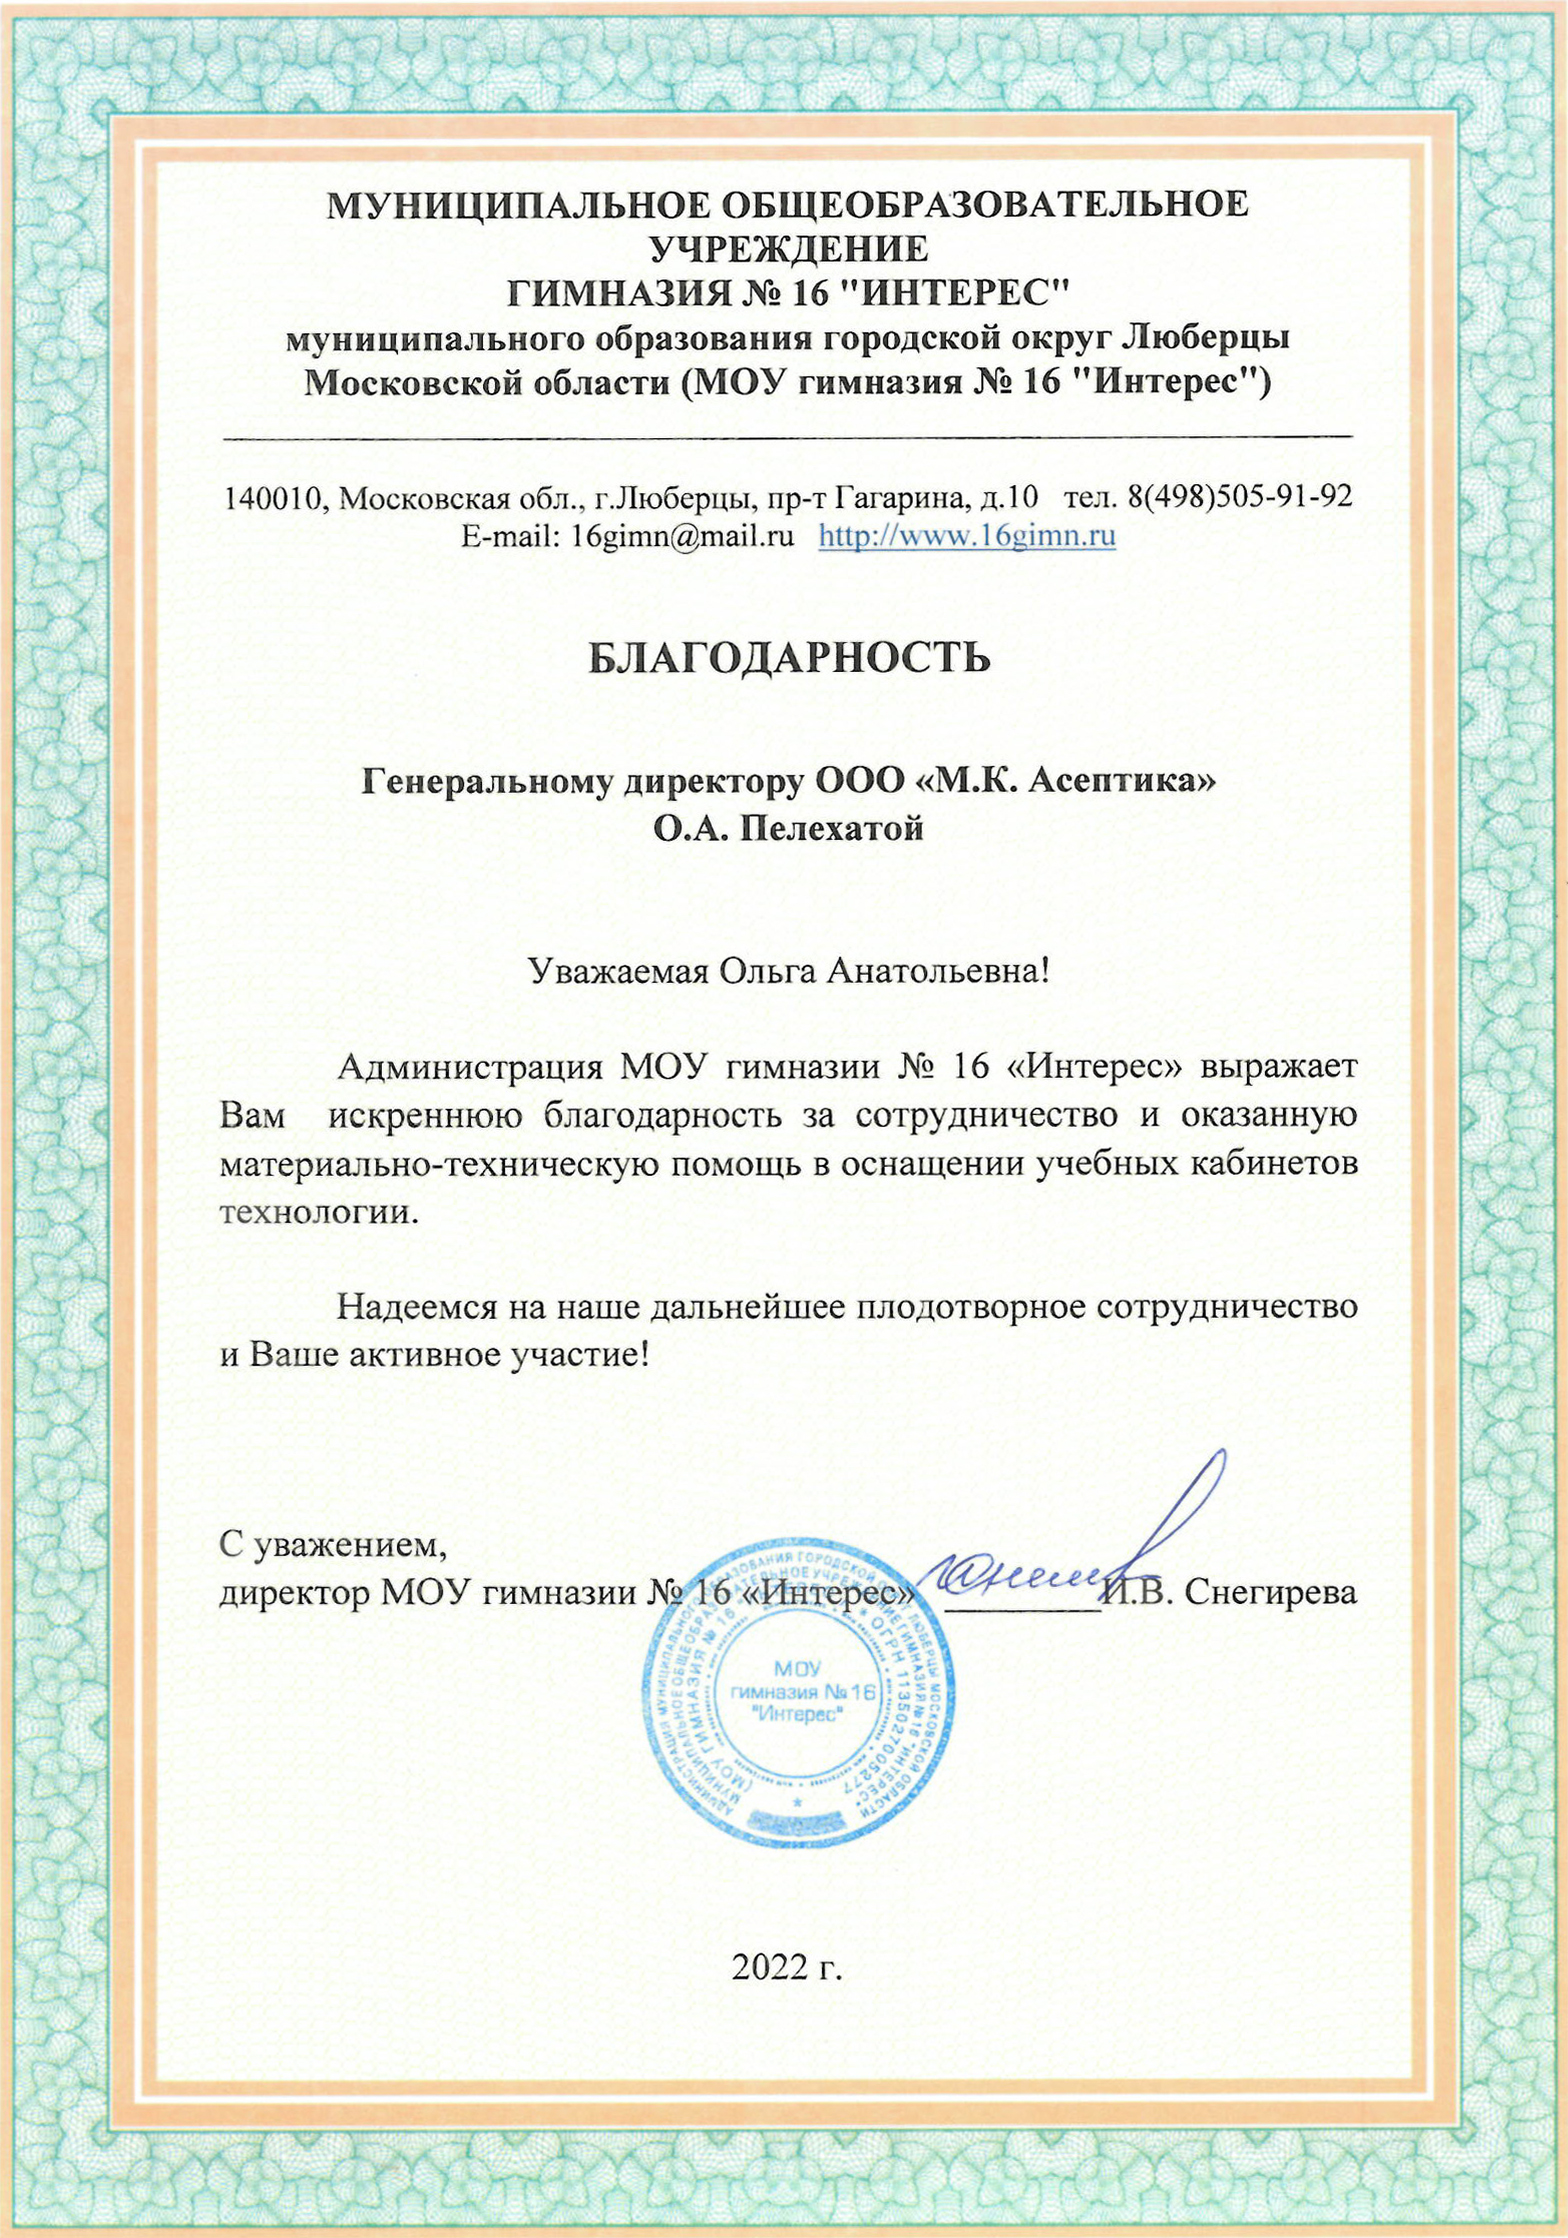 Gratitude from I.V. Snegireva, director of MEI "Gymnasium No. 16 "Interes"